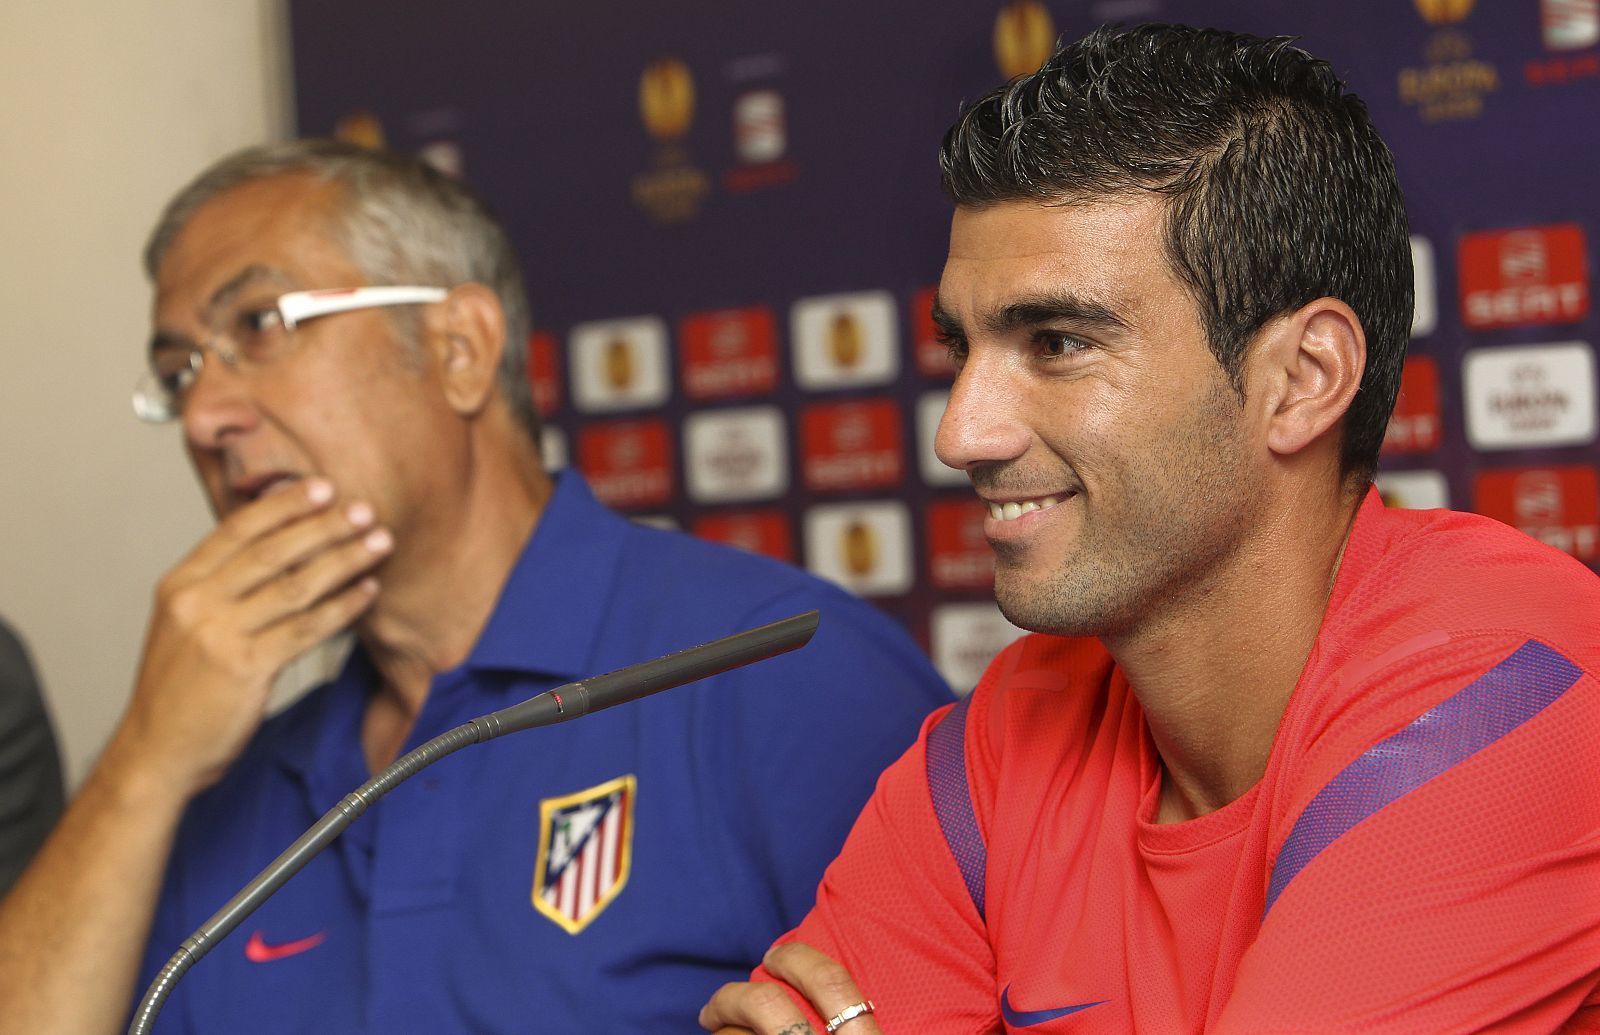 El jugador del At. de Madrid, José Antonio Reyes (d), acompañado del técnico rojiblanco, Gregorio Manzano